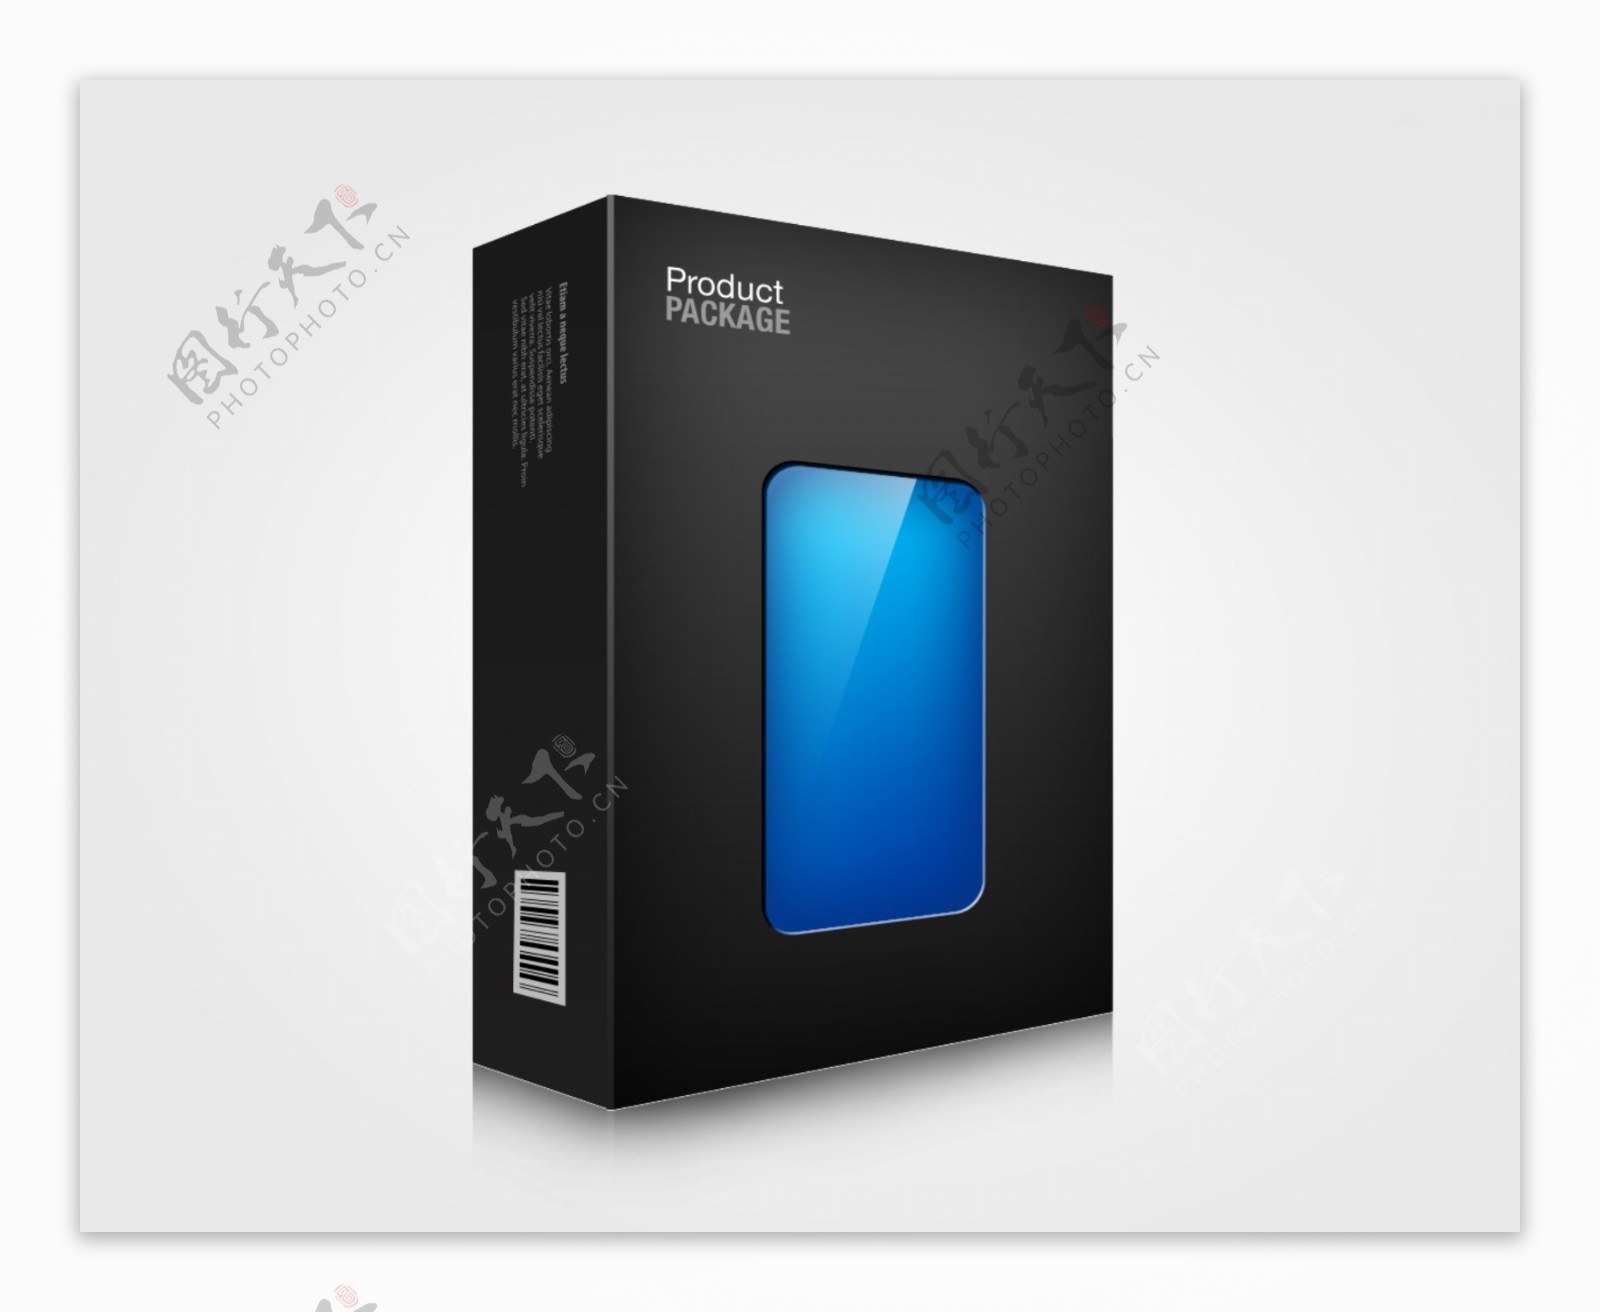 炫酷黑色数码产品包装盒效果图PSD素材